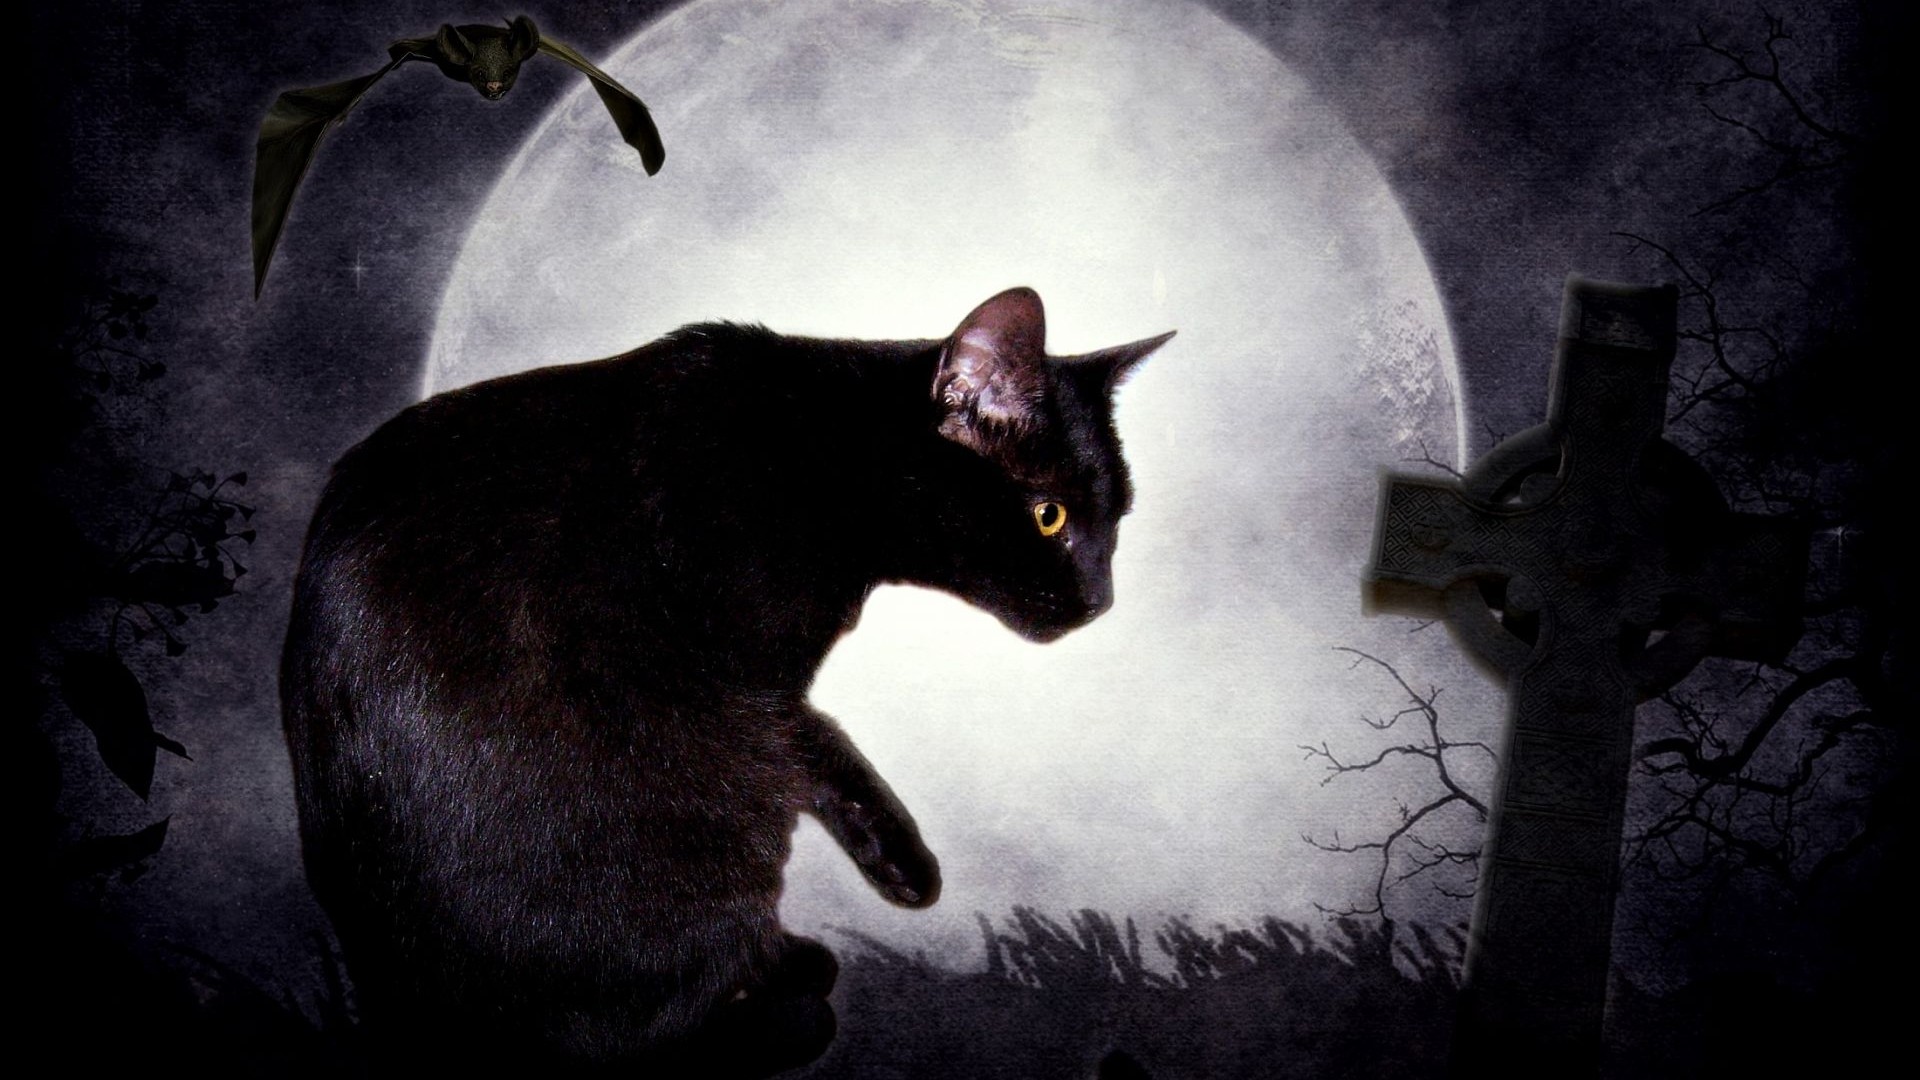 Art Cemetery Edgar Allan Poe Bats The Black Cat Tombs Wallpaper